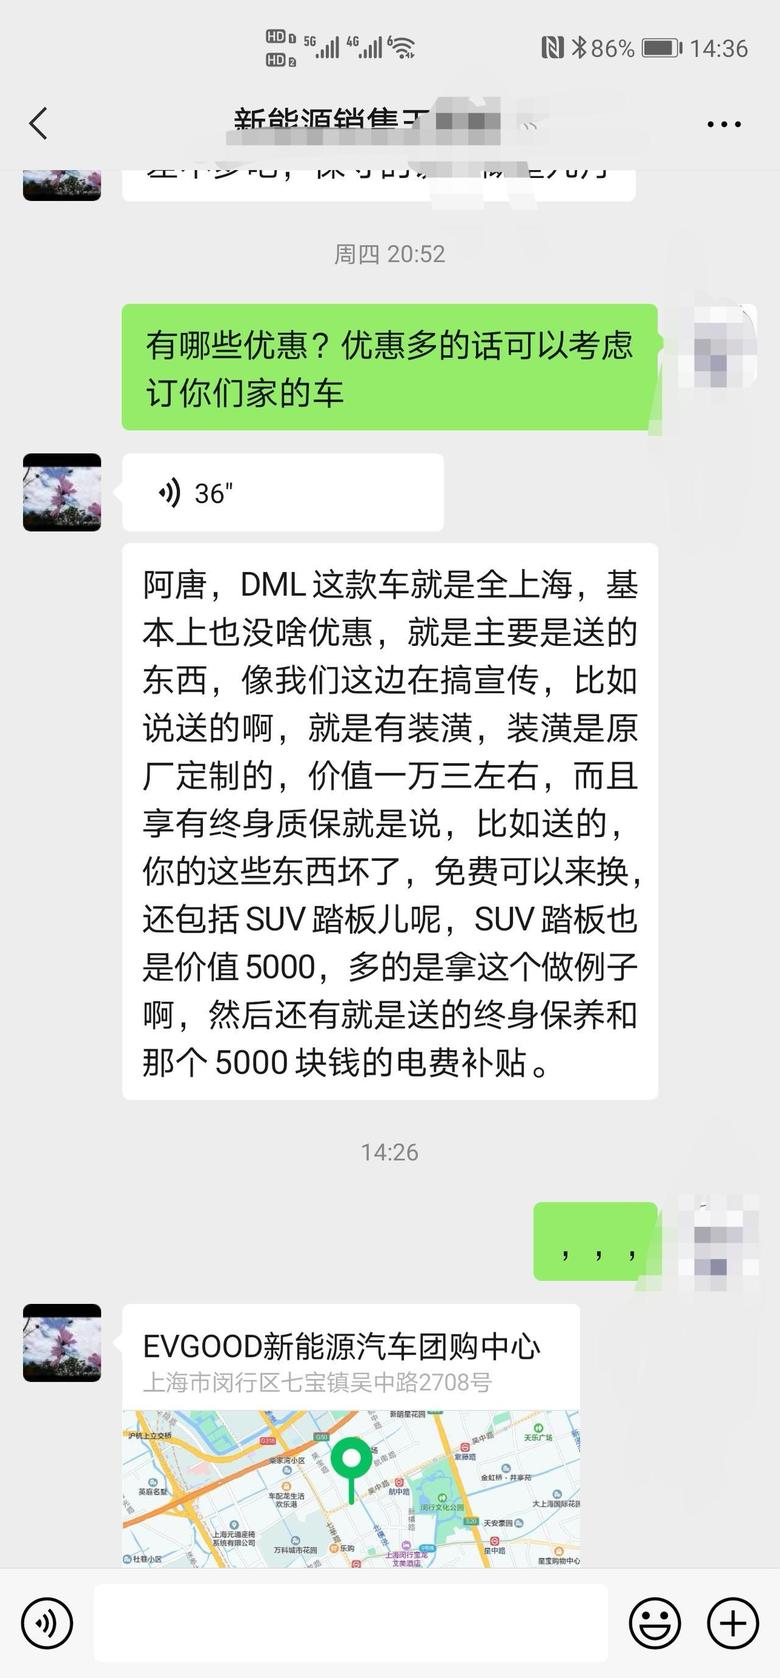 上海EVGood新能源团购中心有上海的车友了解吗？订购比亚迪唐DMi送五千电费补贴以及终身保养。感觉送的有点多啊。其他4s店基本都没有优惠，这个靠谱不？